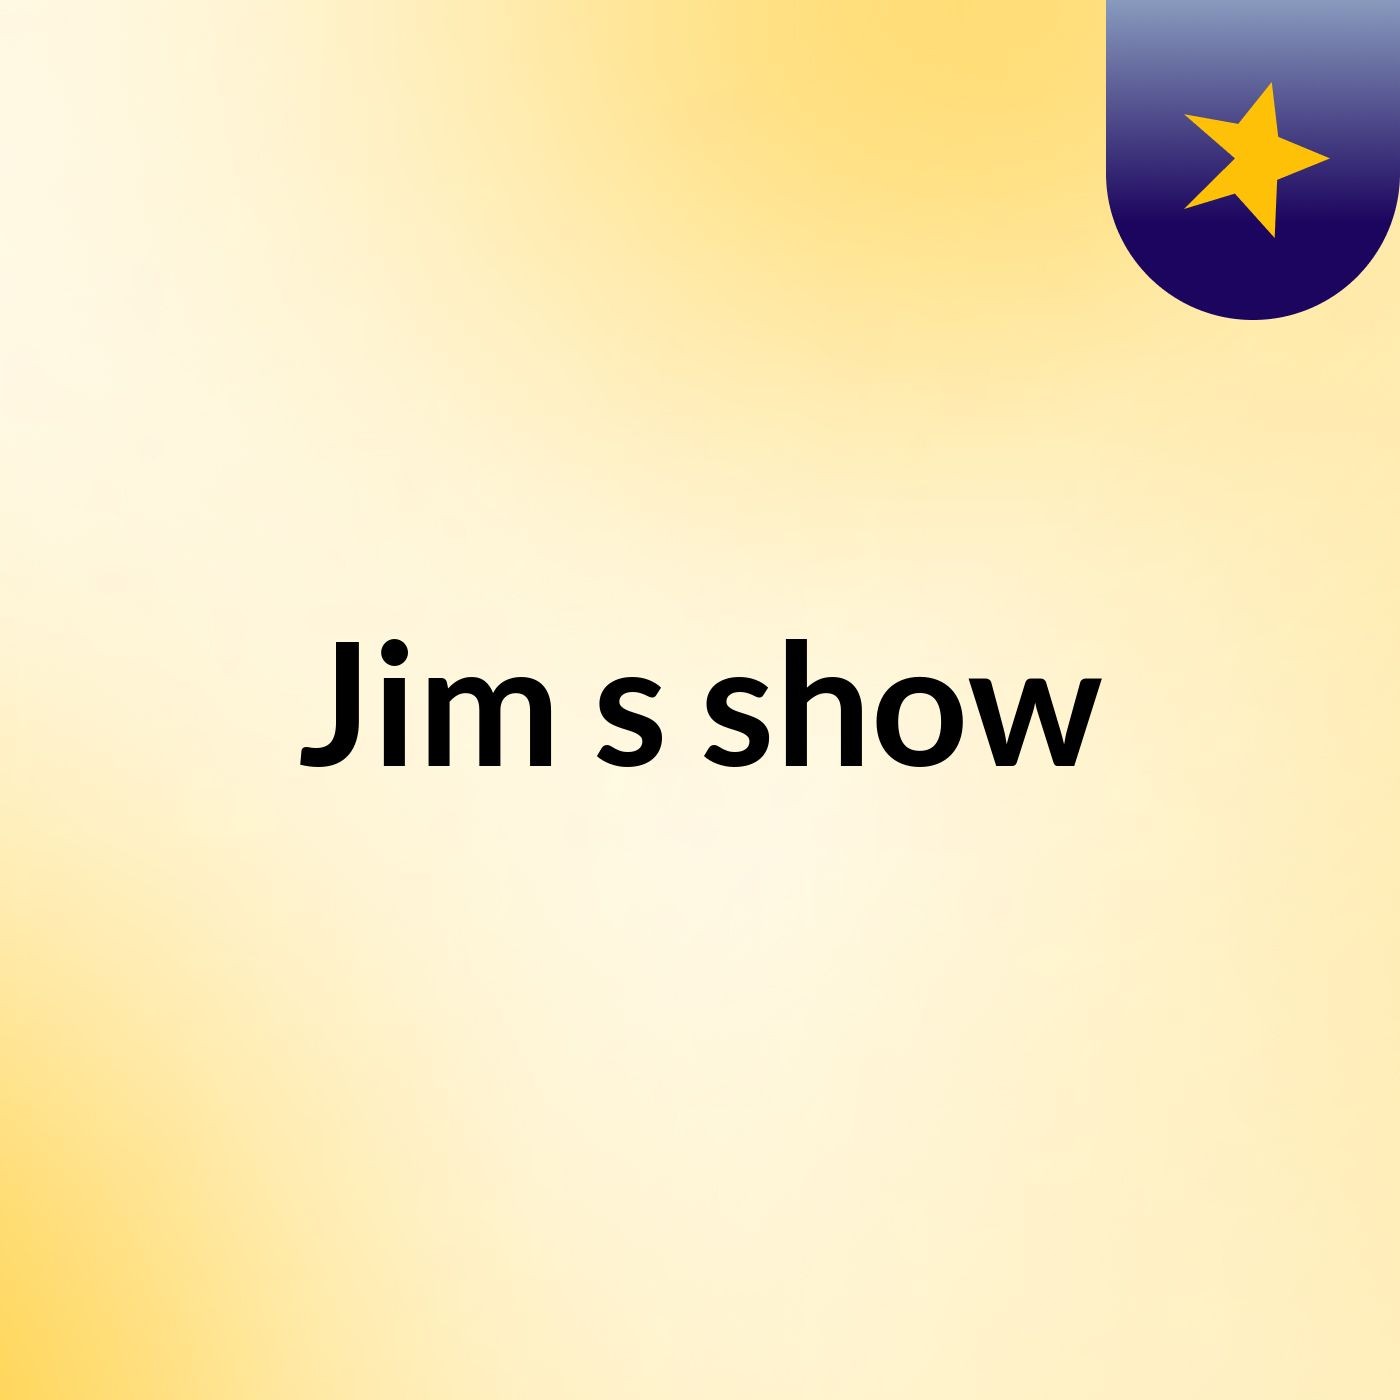 Jim's show